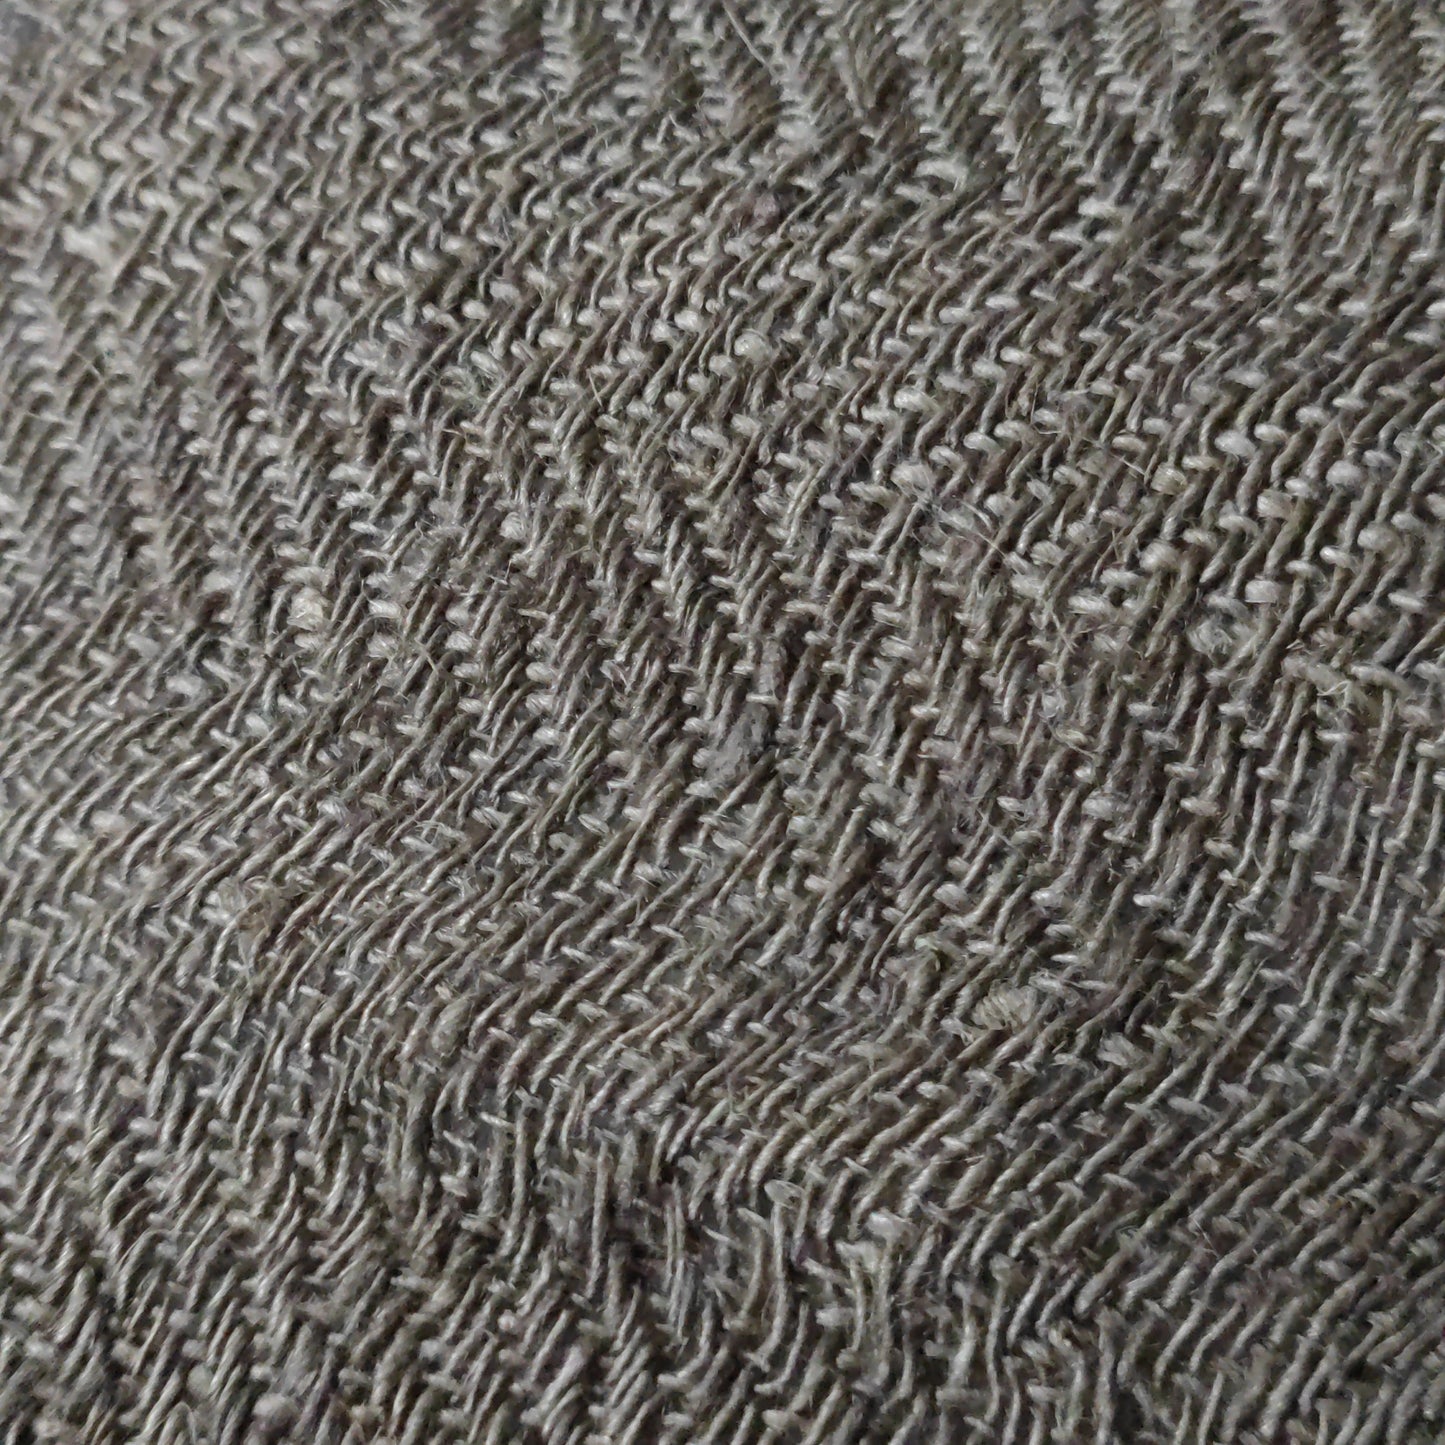 Linen/silk plaid 130 x 170